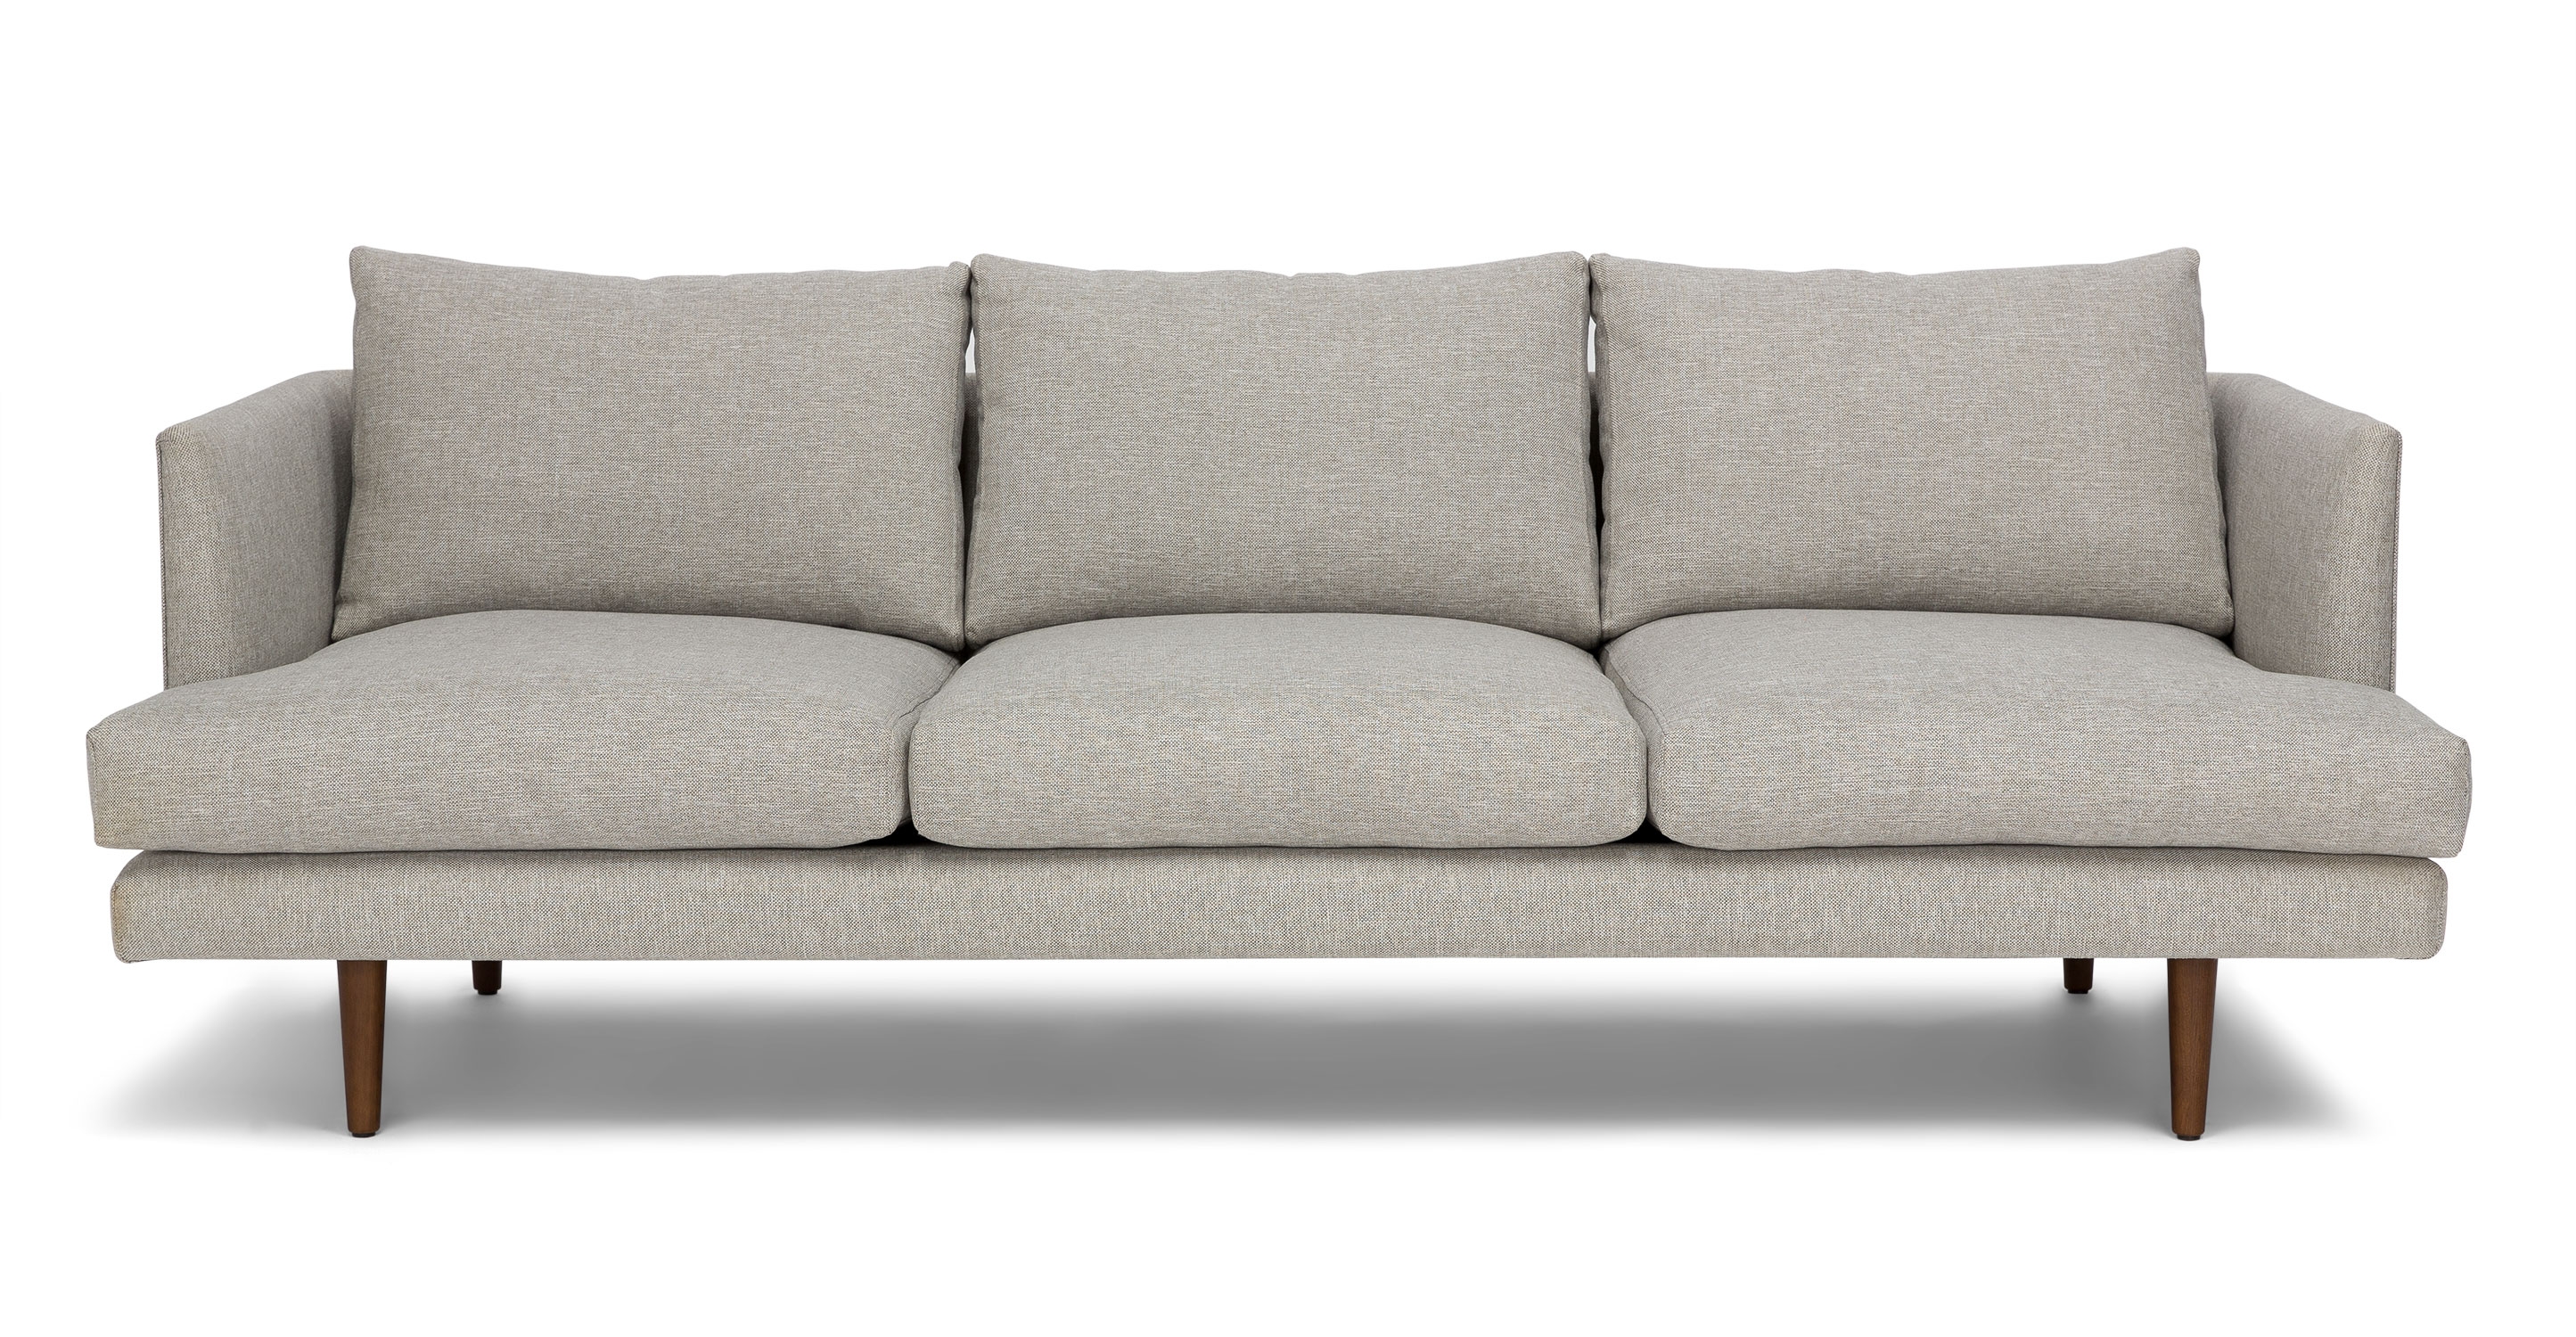 Burrard Graphite Gray Sofa - Image 1